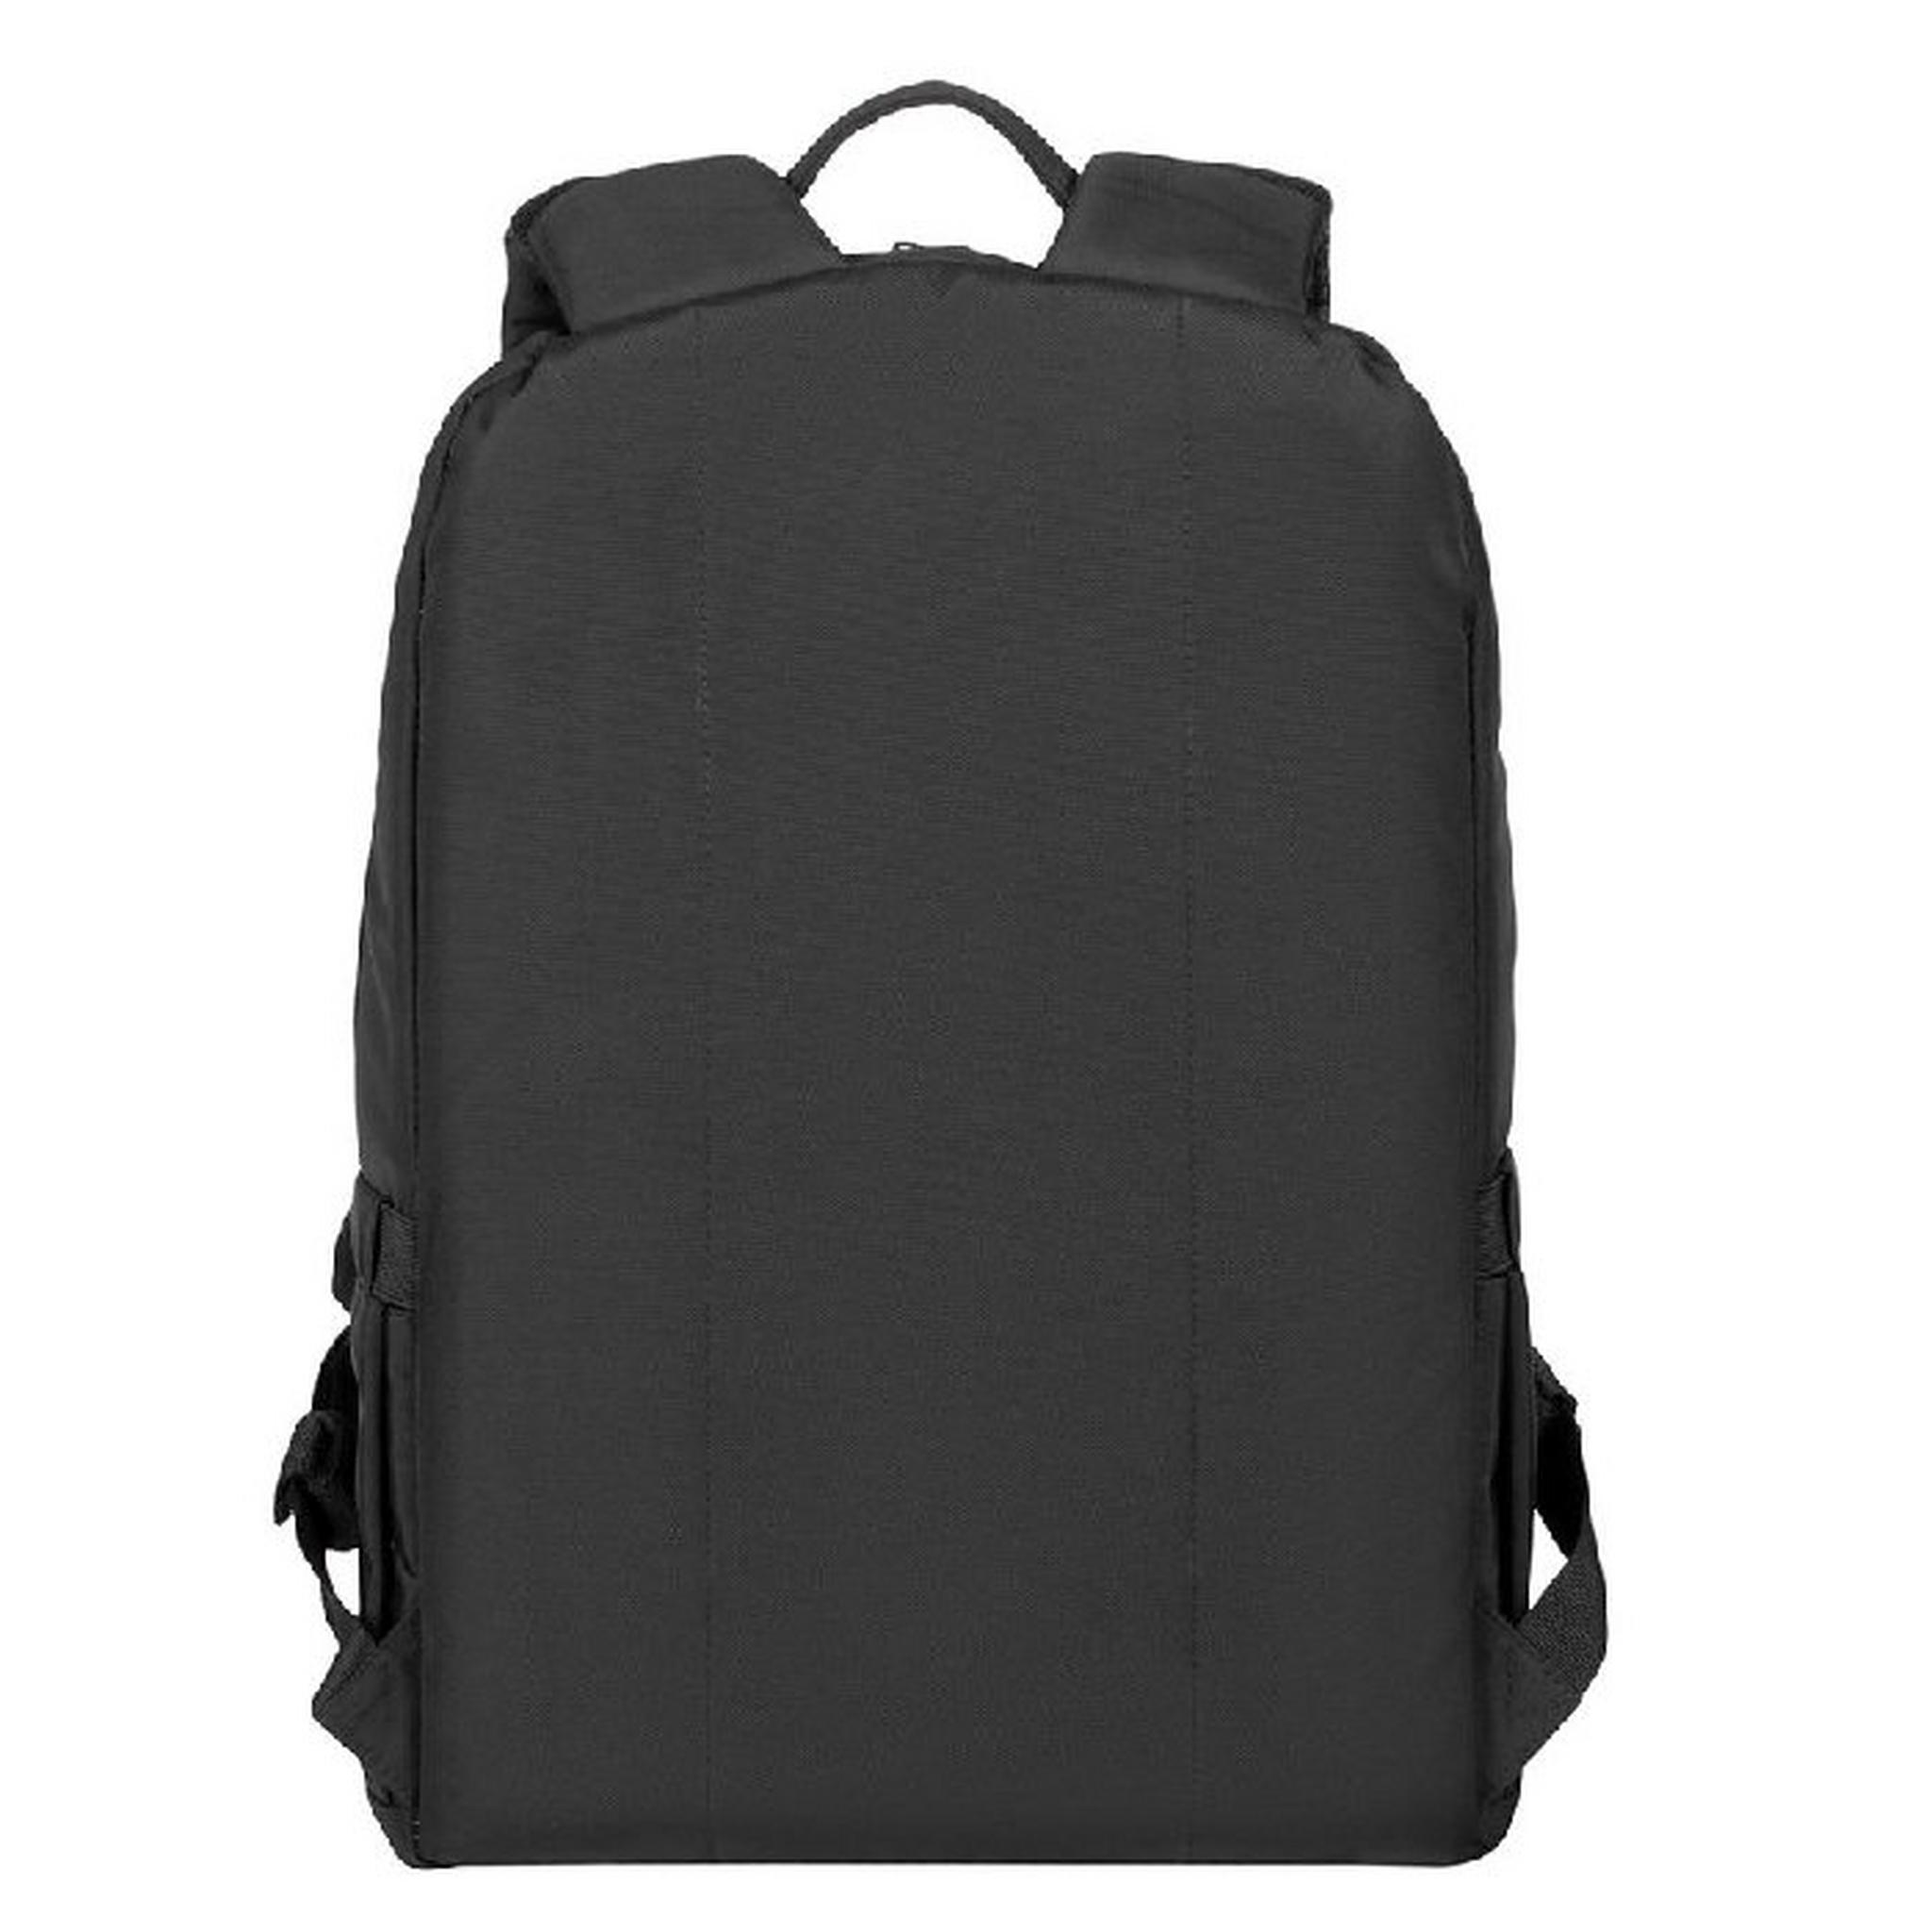 حقيبة ظهر البيندروف ايكو من ريفا للابتوب، 15.6-16 بوصة، 7561 - أسود